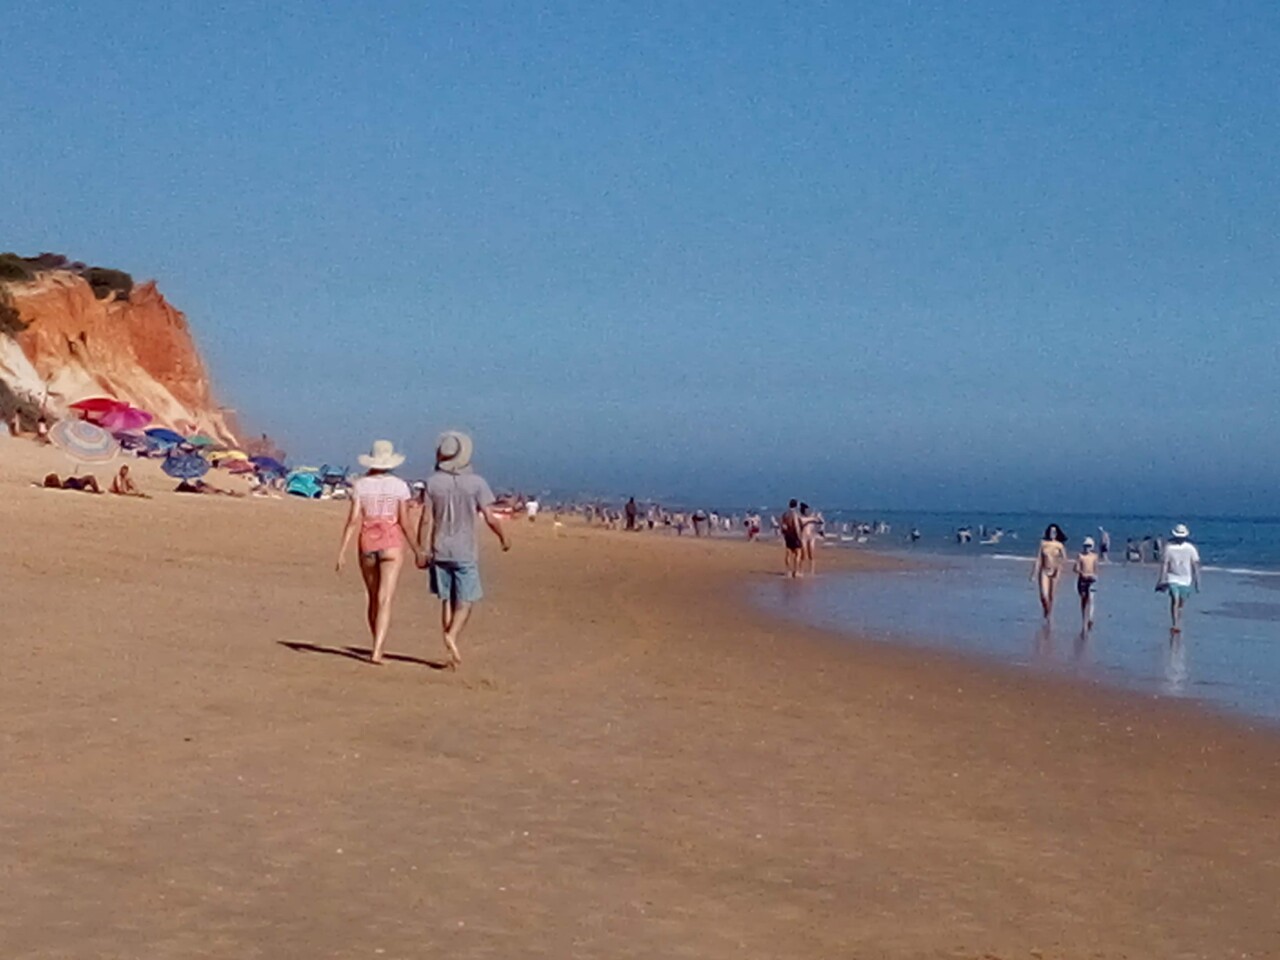 Praia da Falésia como era dantes, Algarve — (c) 2018